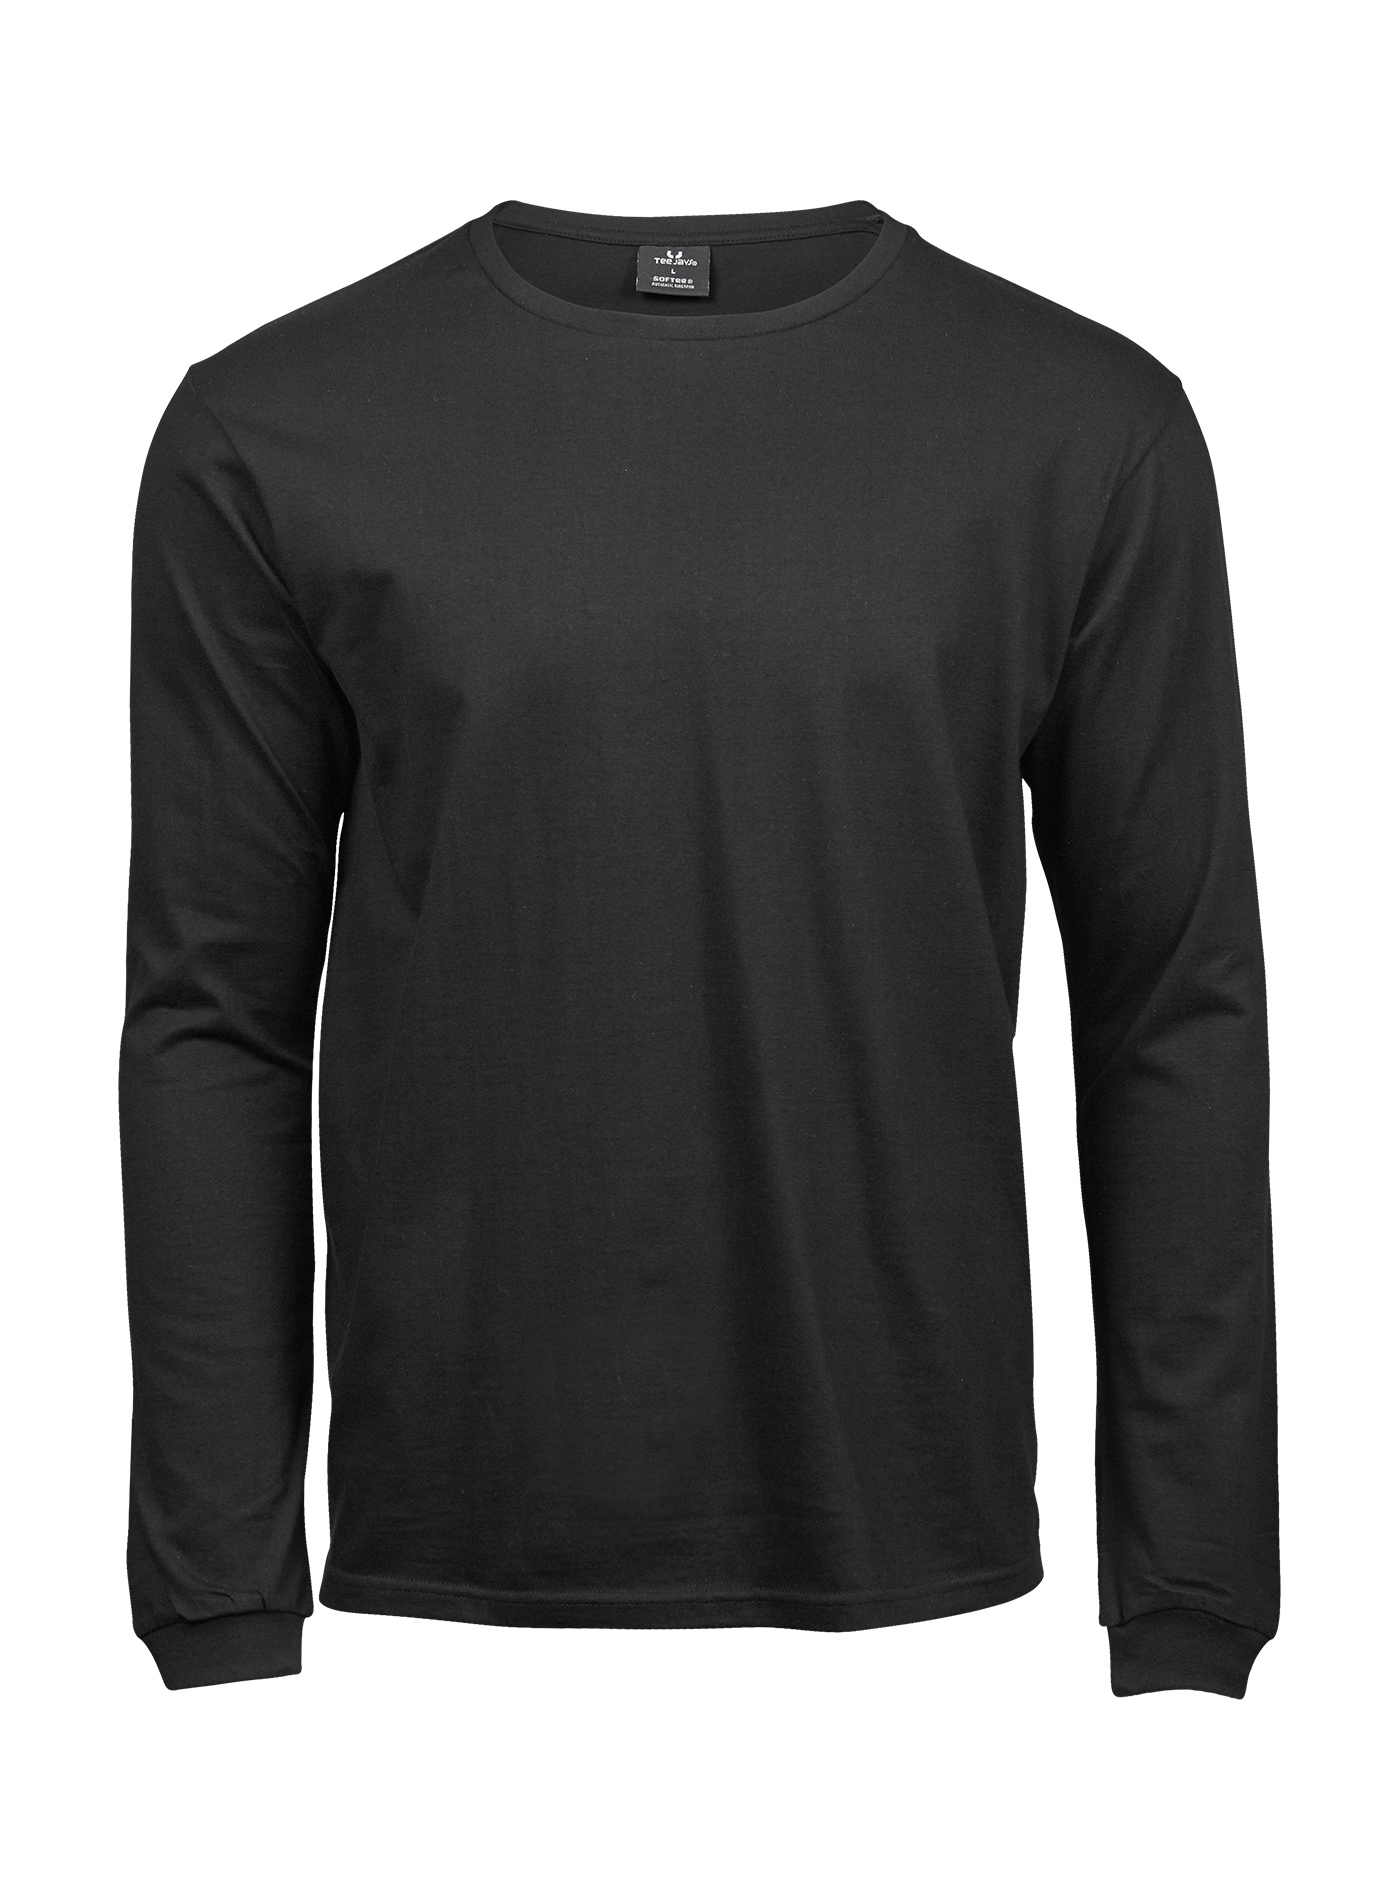 Pánské tričko s dlouhým rukávem Sof-Tee Jays - černá XL